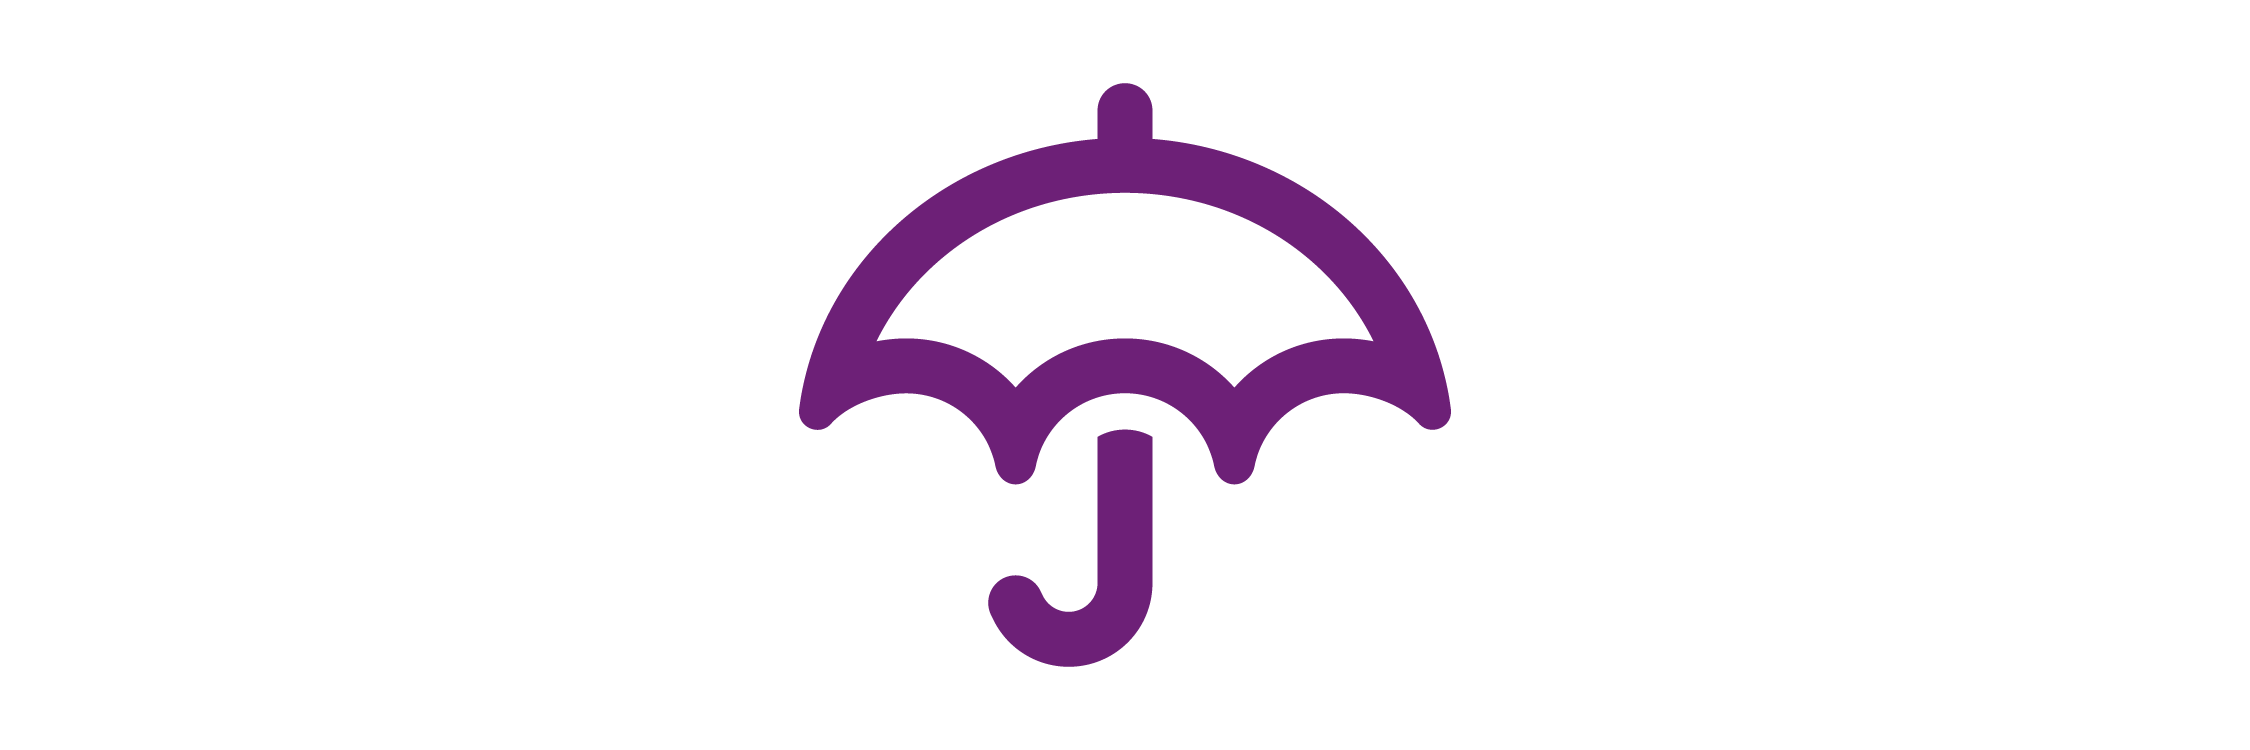 Purple umbrella icon